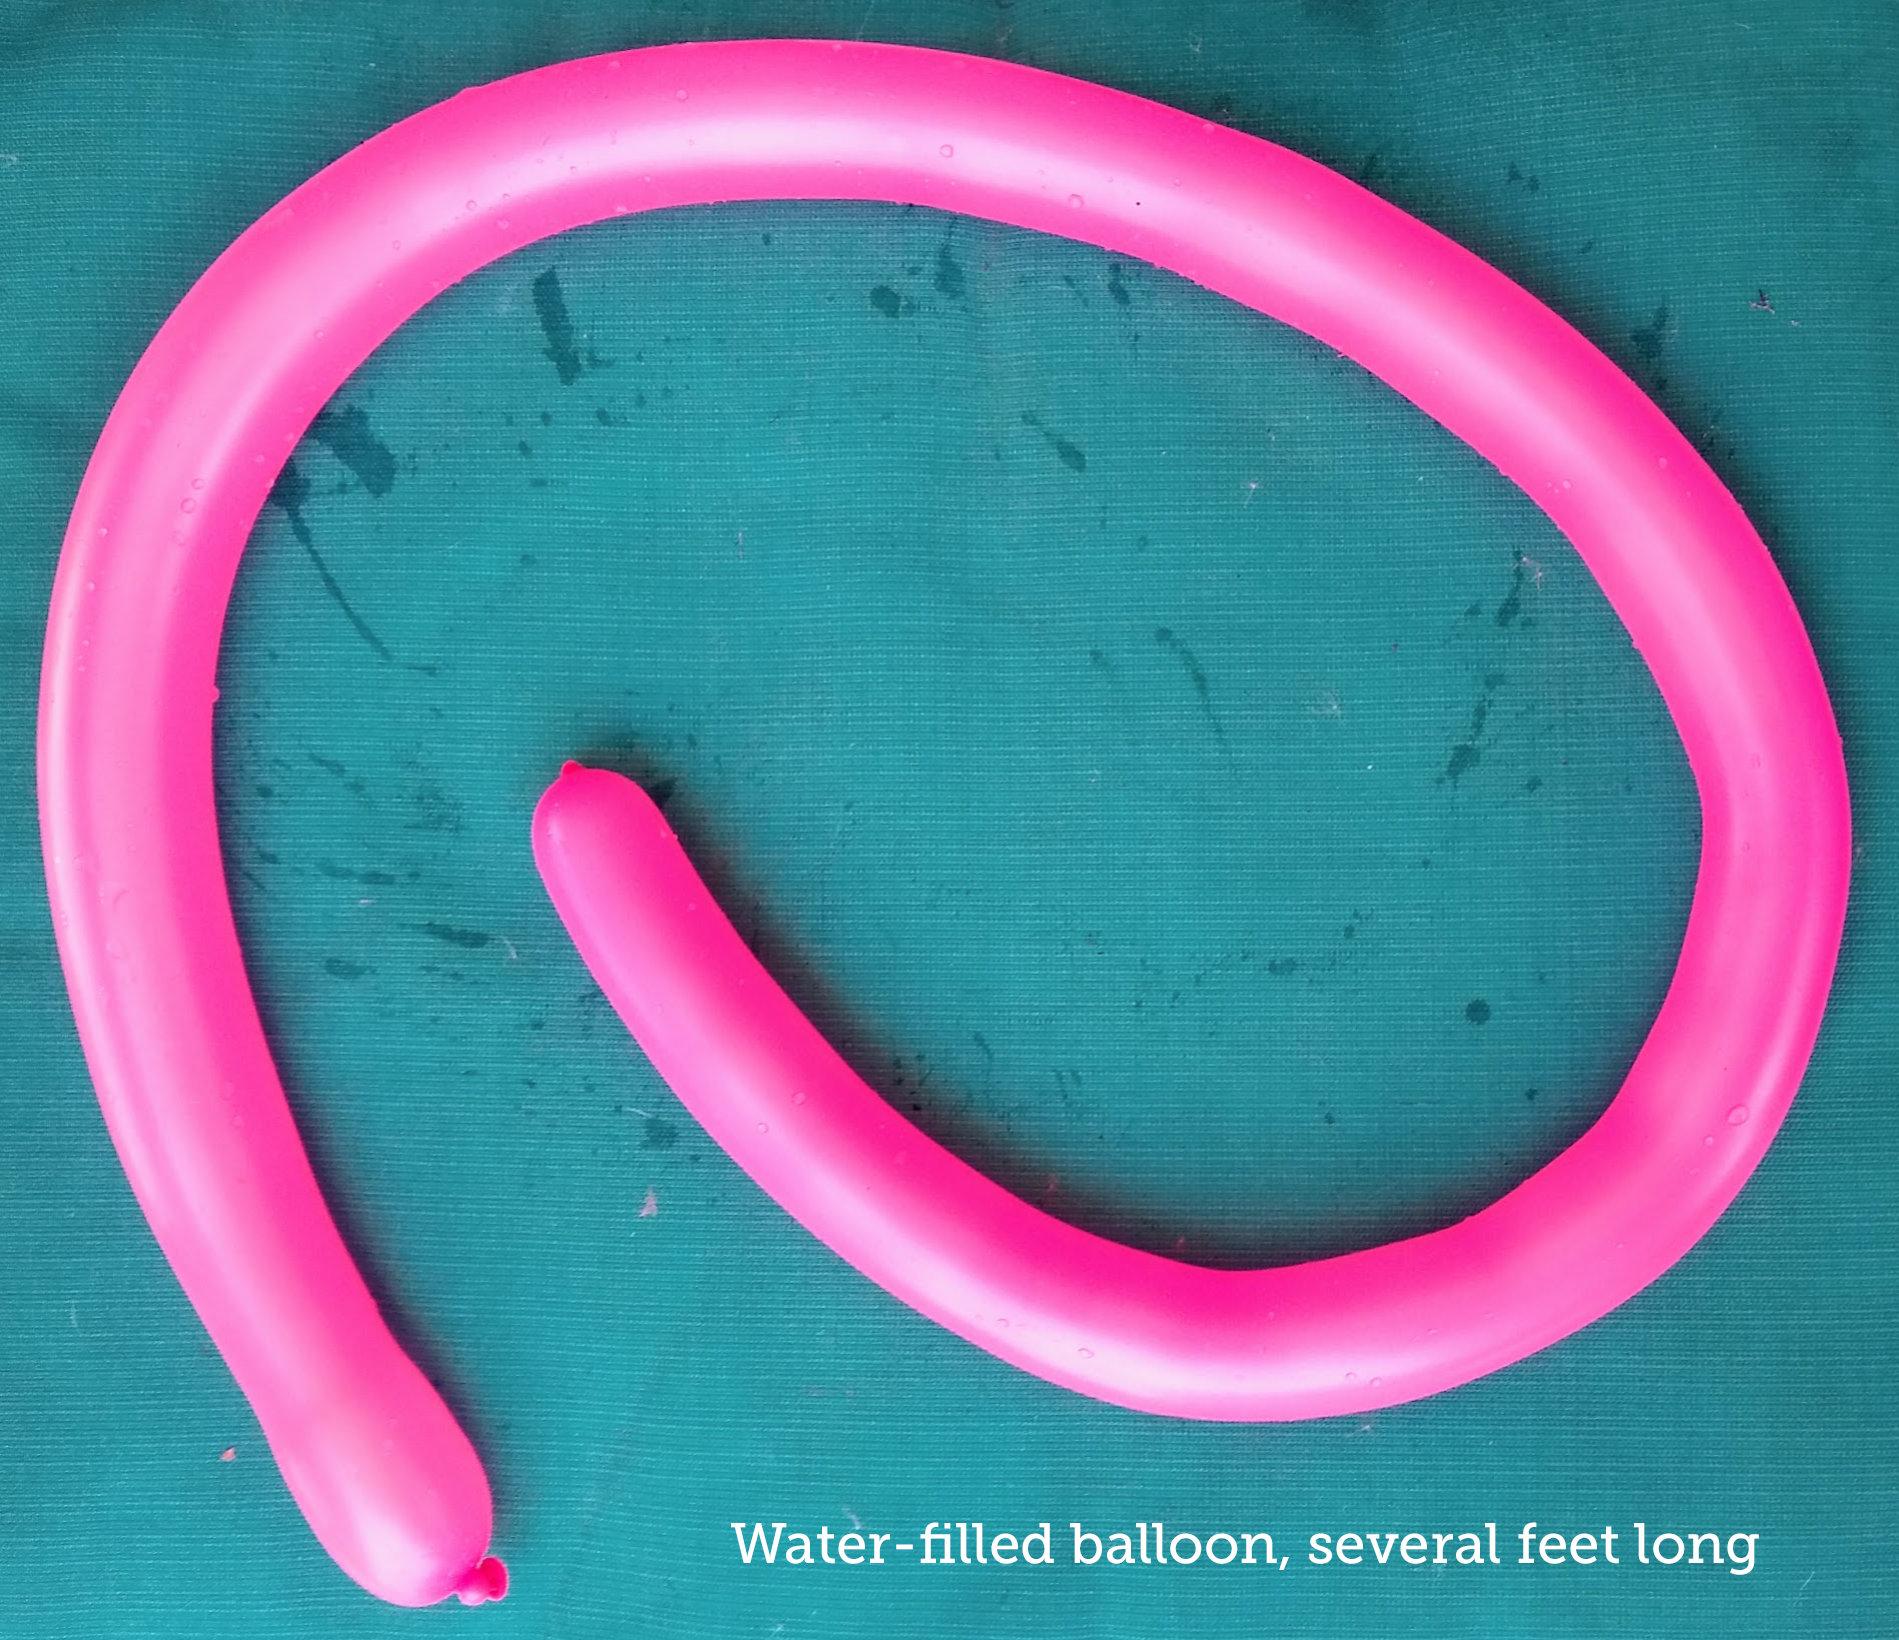 pinkballoon.jpg